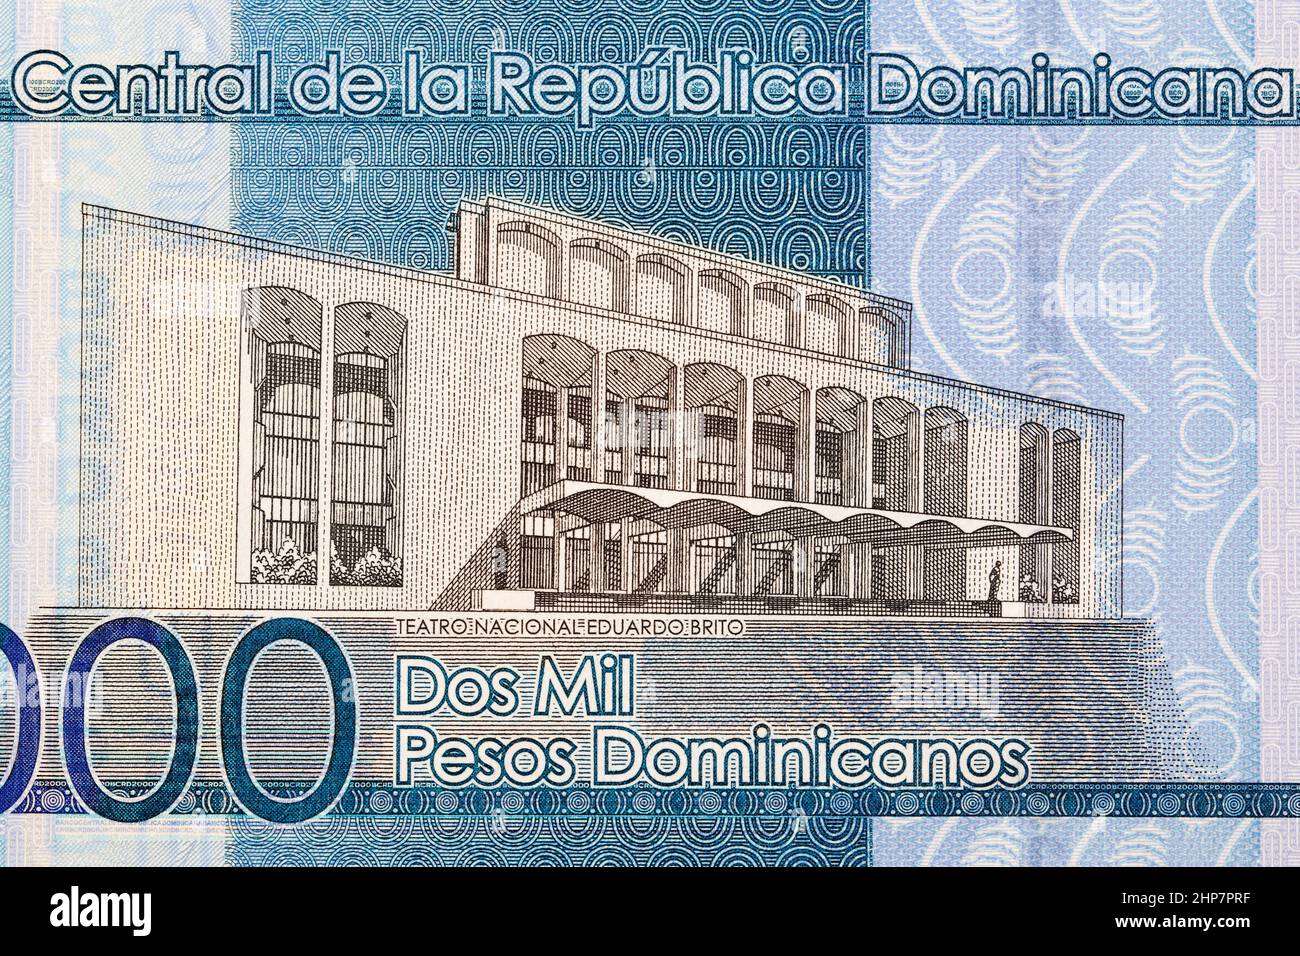 Théâtre national Eduardo Brito de la République Dominicaine argent - pesos Banque D'Images